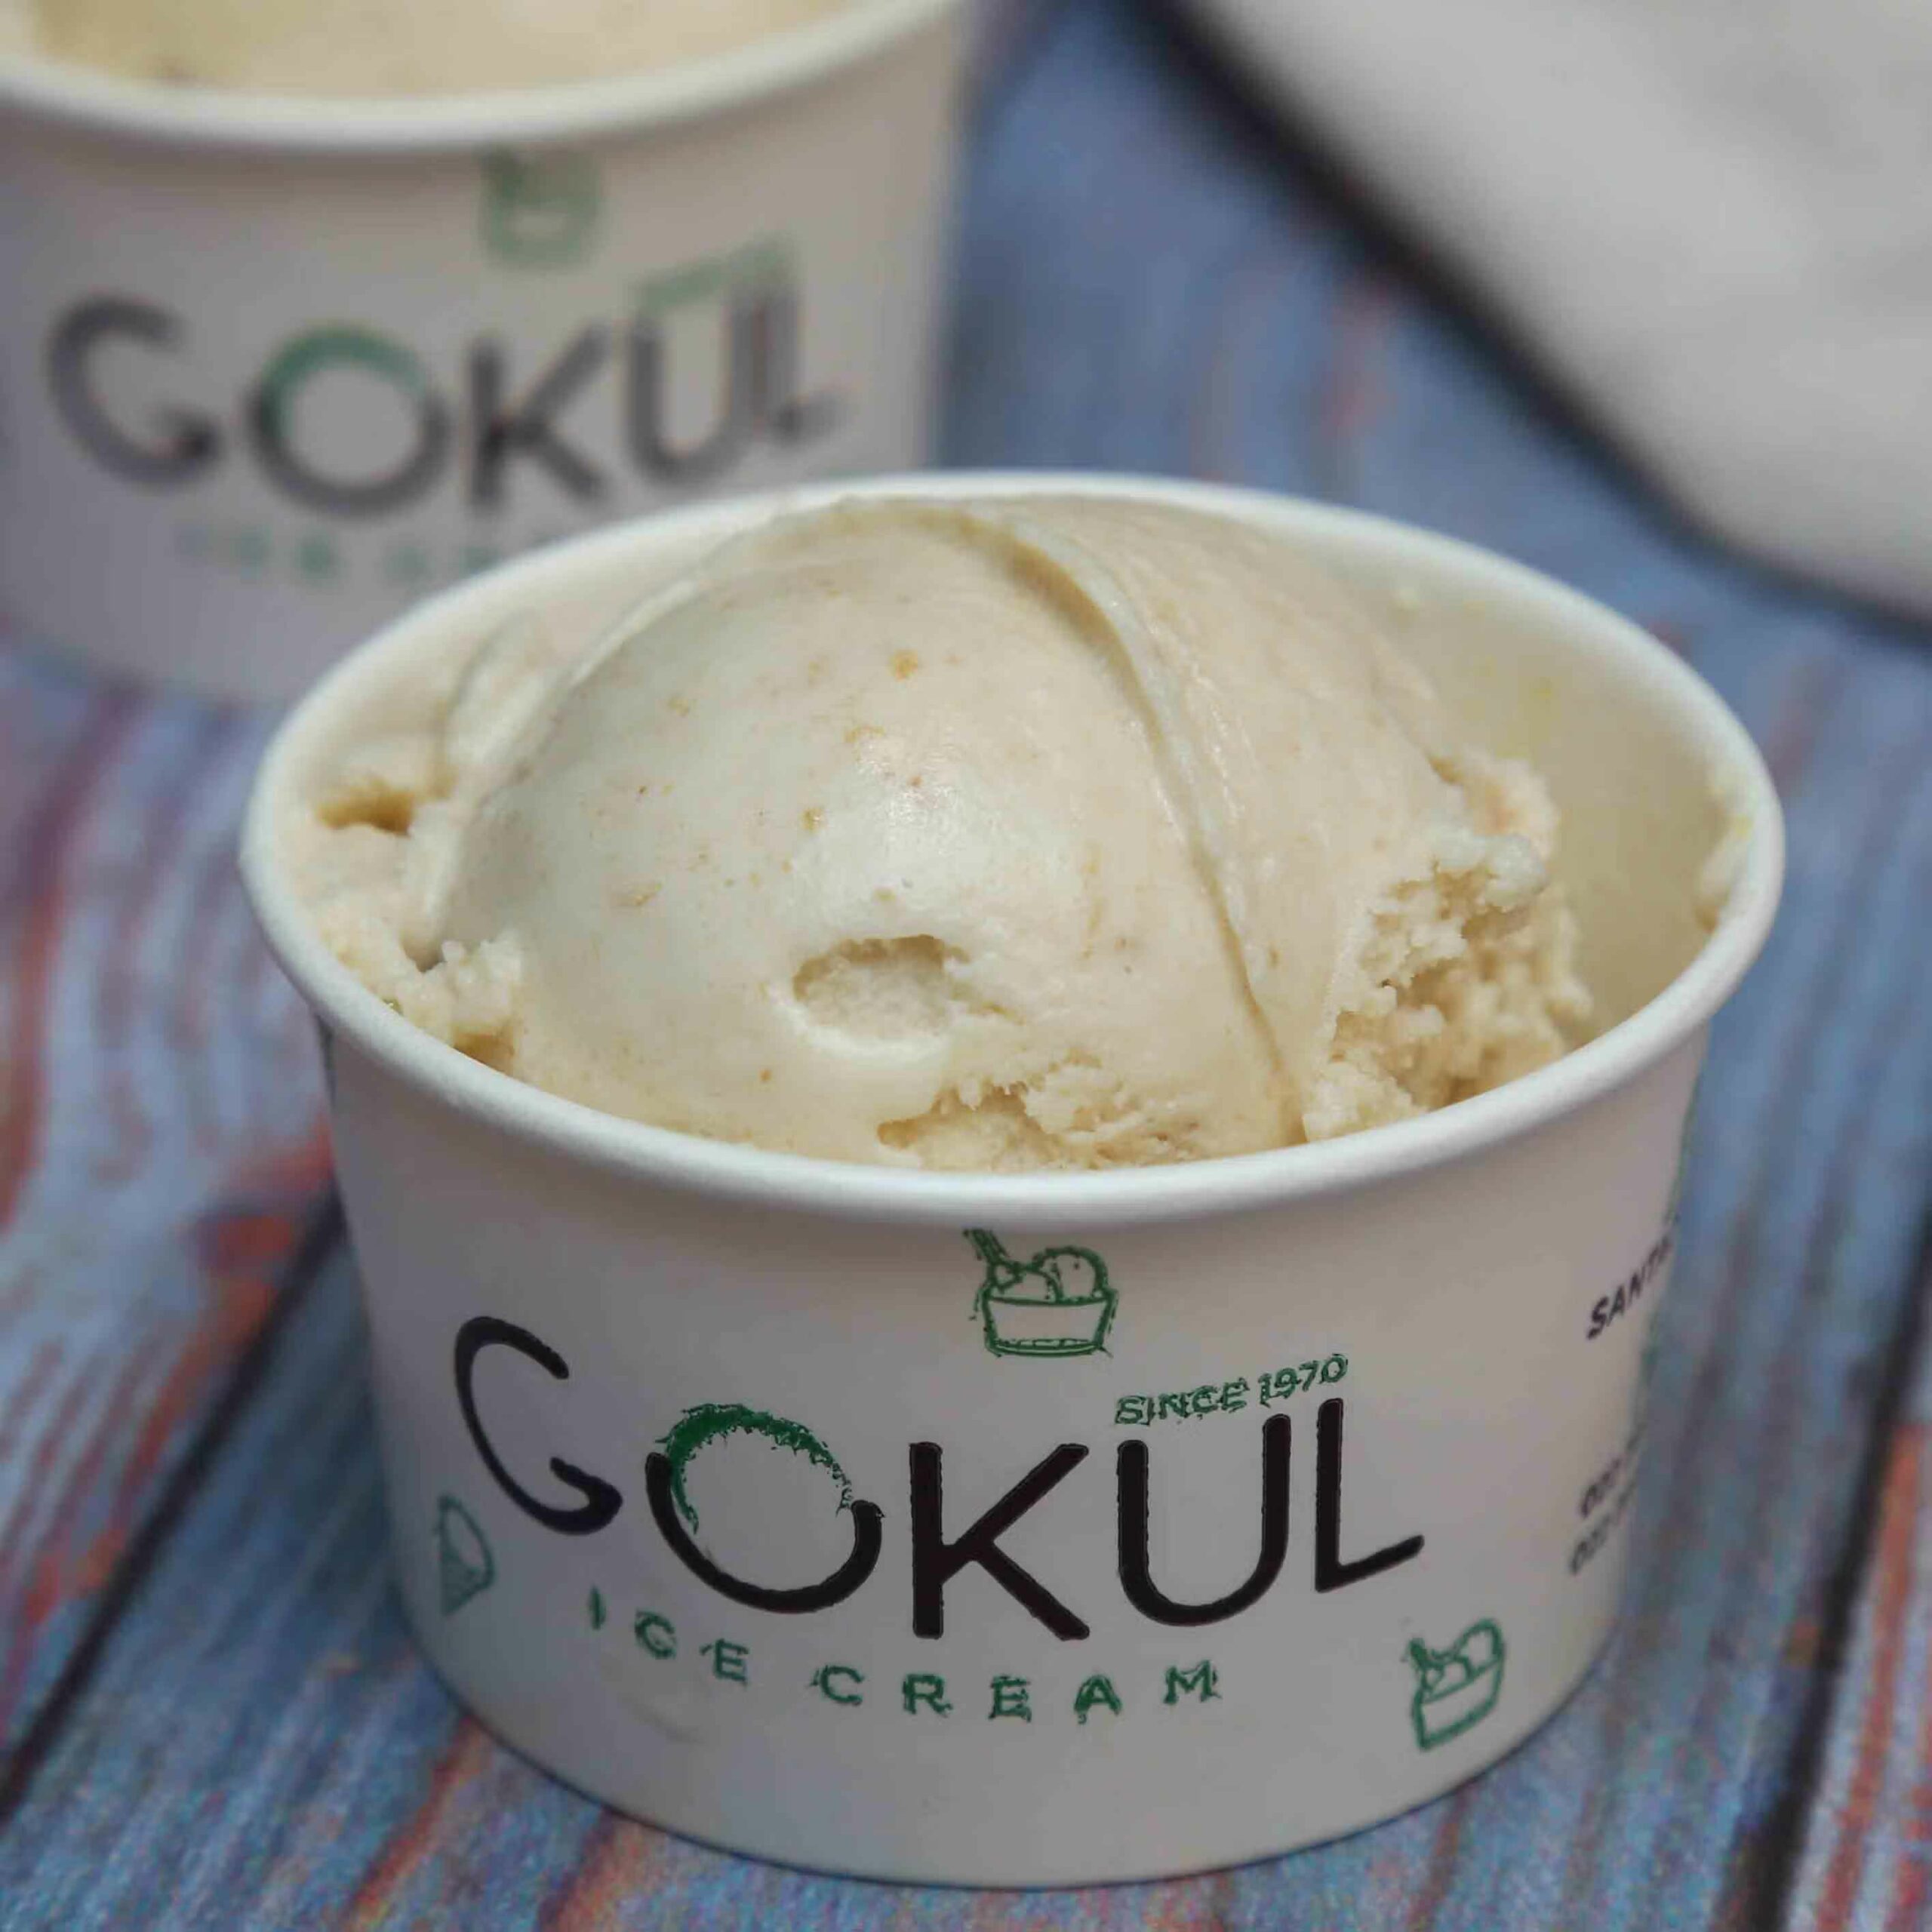 El helado Gokul es popular por la consistencia en el sabor que la marca ha mantenido desde 1970.